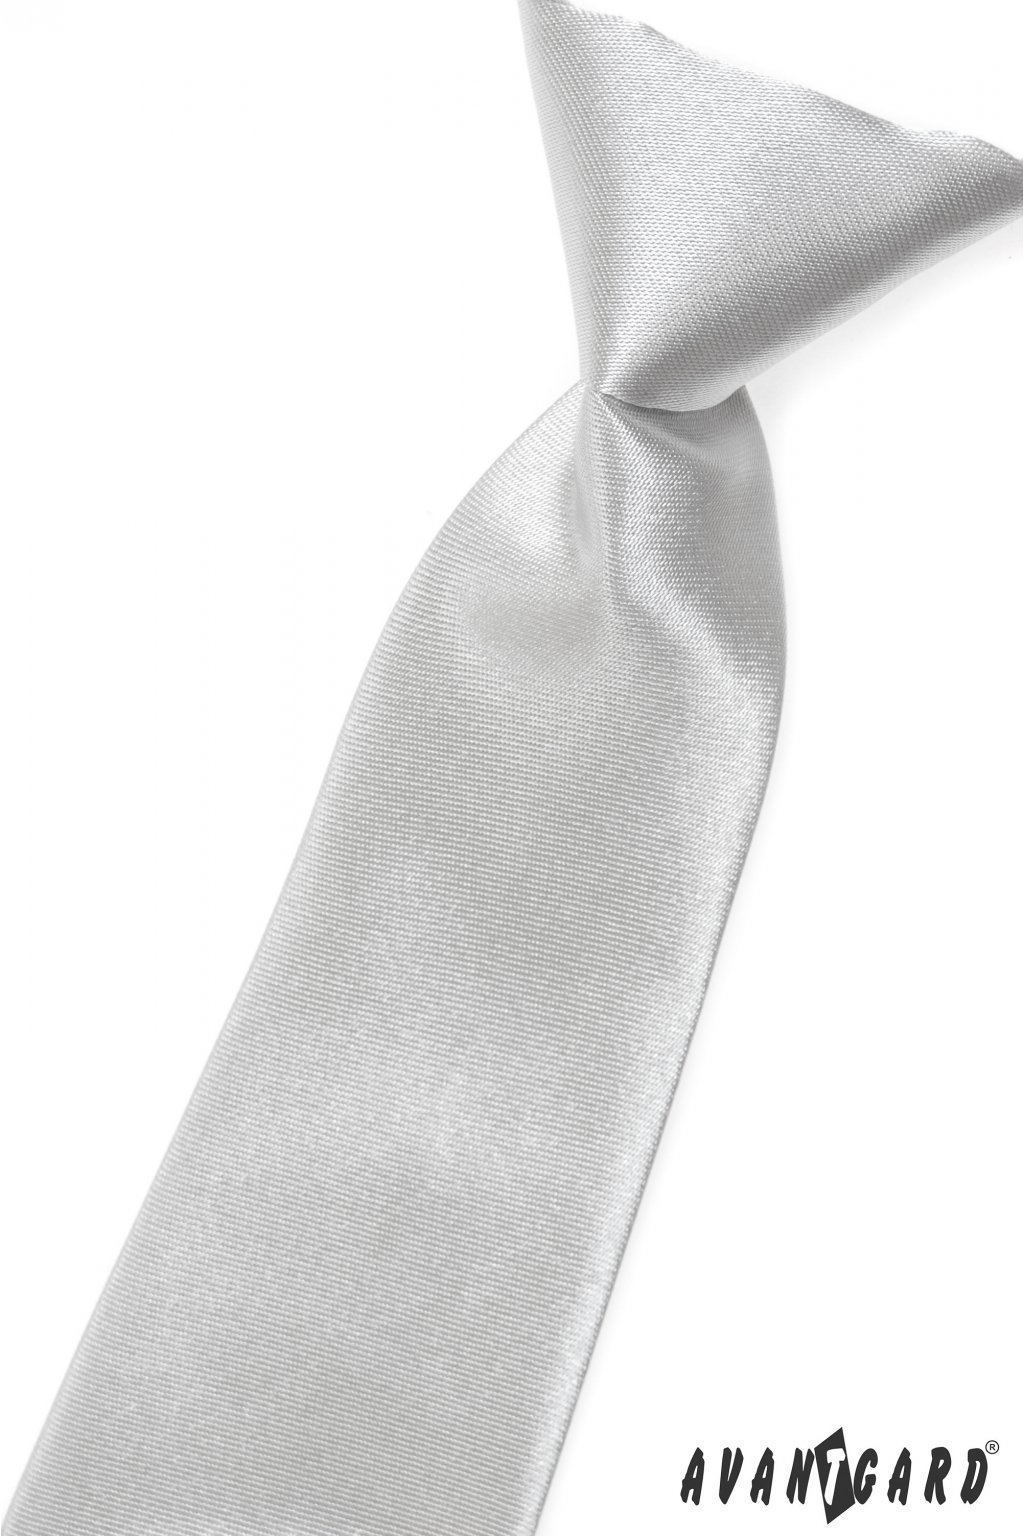 Chlapecká kravata stříbrná 558 - 737